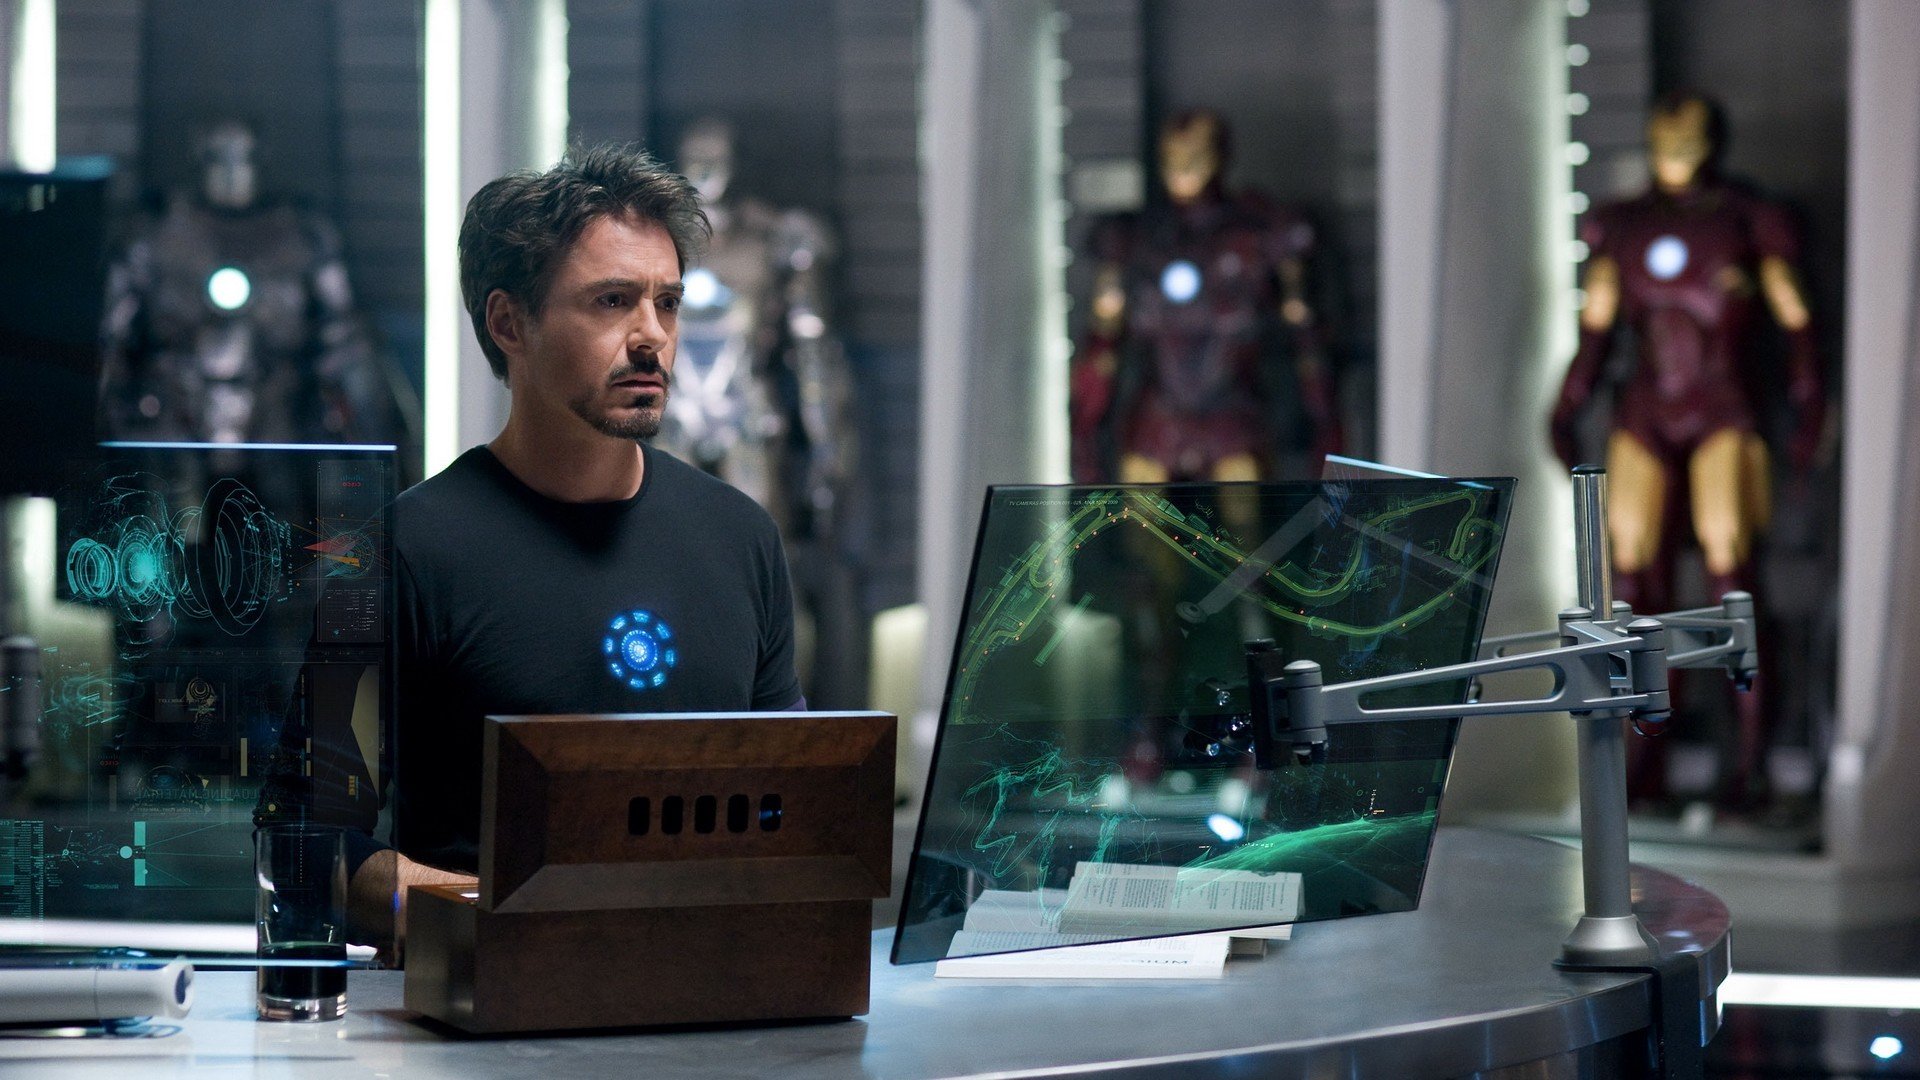 Iron Man 2, Tony Stark, Robert Downey Jr., Iron Man HD Wallpapers / Desktop  and Mobile Images & Photos